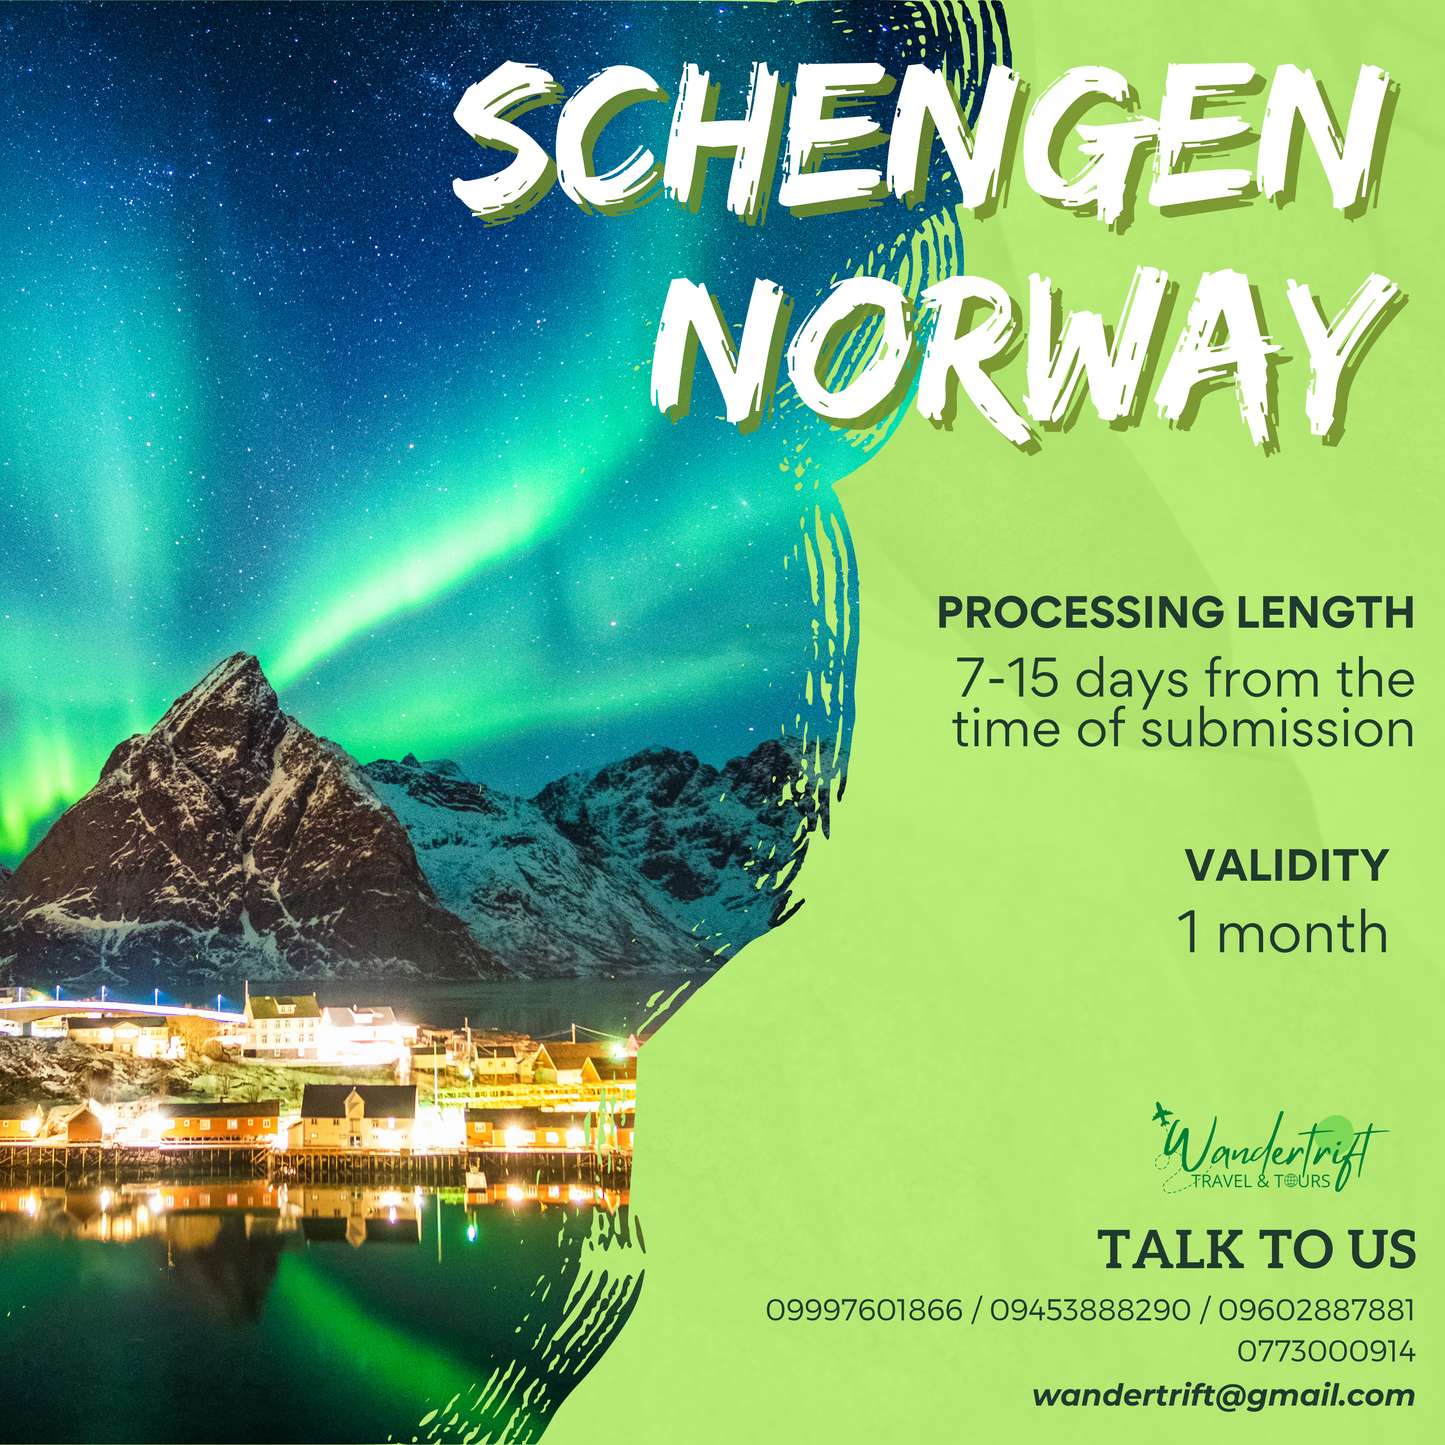 SCHENGEN NORWAY VISA